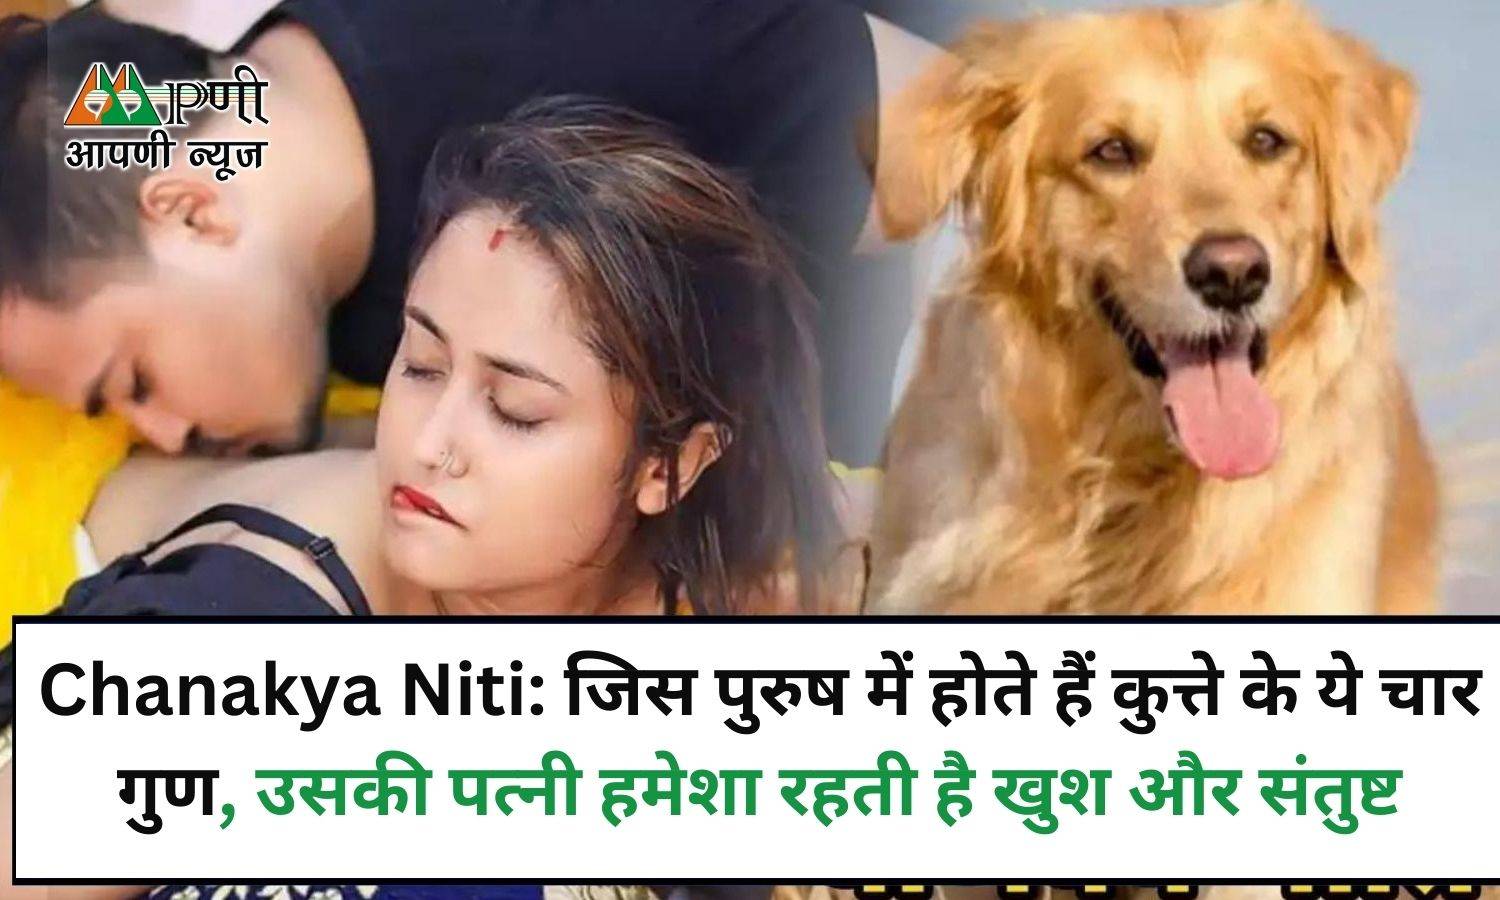 Chanakya Niti: जिस पुरुष में होते हैं कुत्ते के ये चार गुण, उसकी पत्नी हमेशा रहती है खुश और संतुष्ट